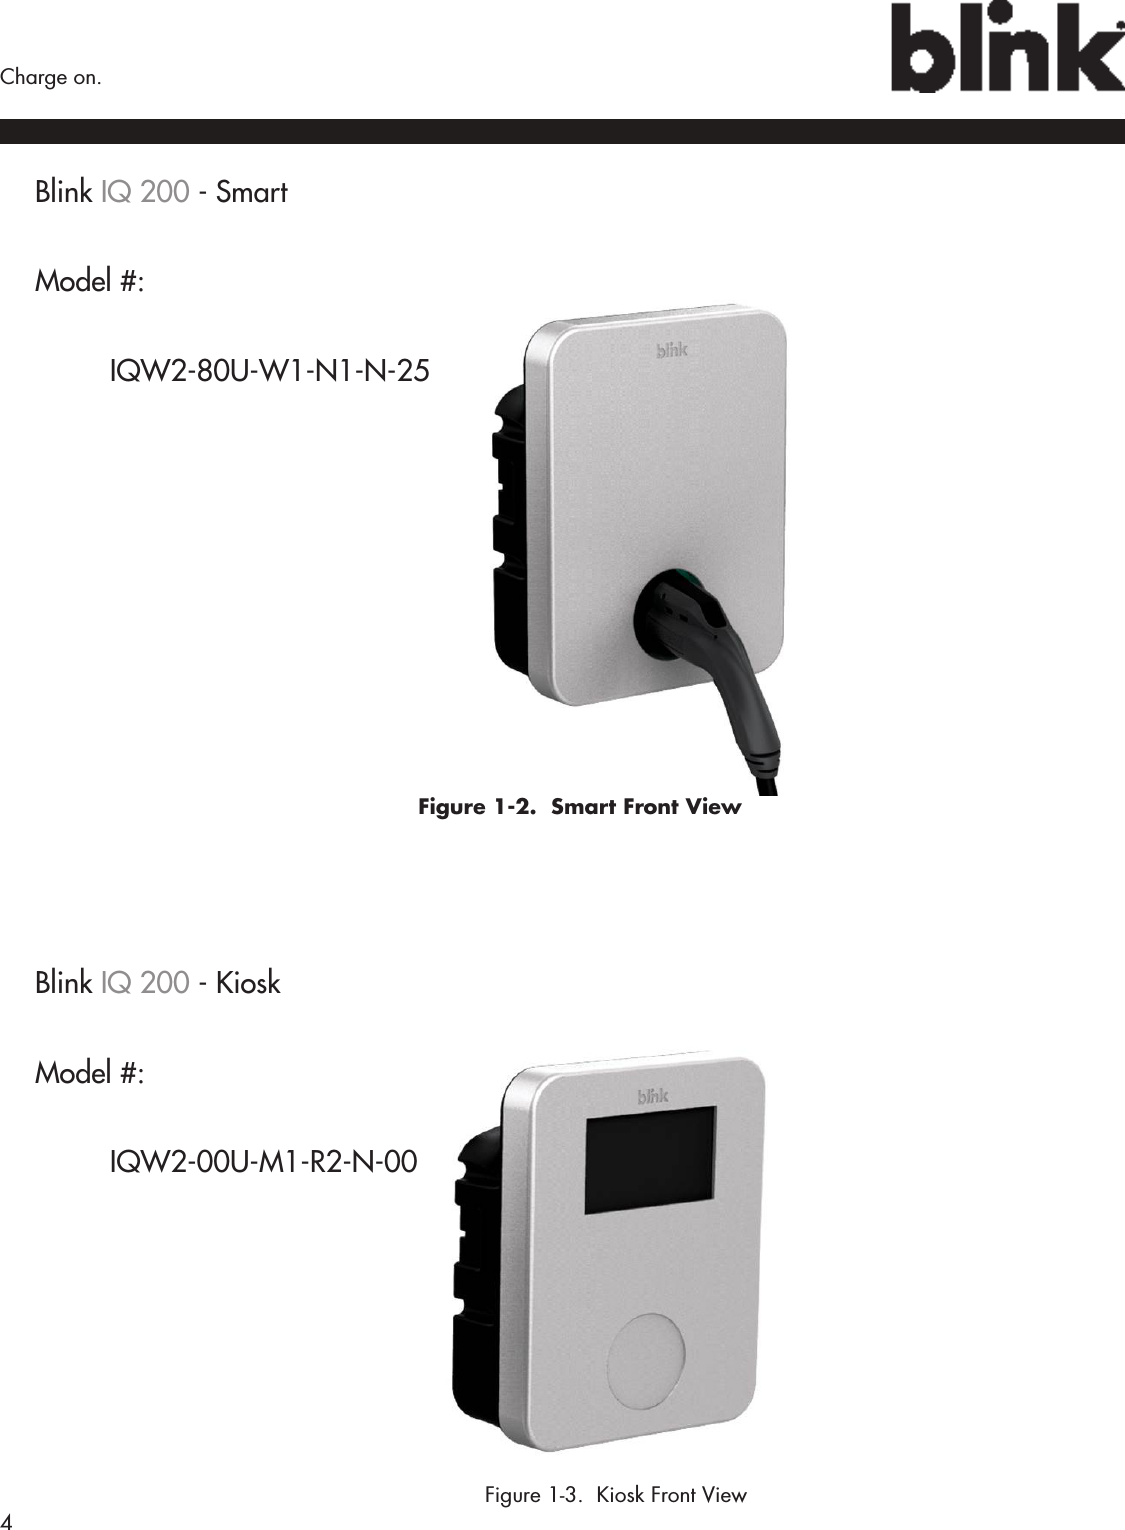 4  Charge on.Blink IQ 200 - SmartModel #:  IQW2-80U-W1-N1-N-25 Figure 1-2.  Smart Front ViewBlink IQ 200 - KioskModel #:  IQW2-00U-M1-R2-N-00           Figure 1-3.  Kiosk Front View